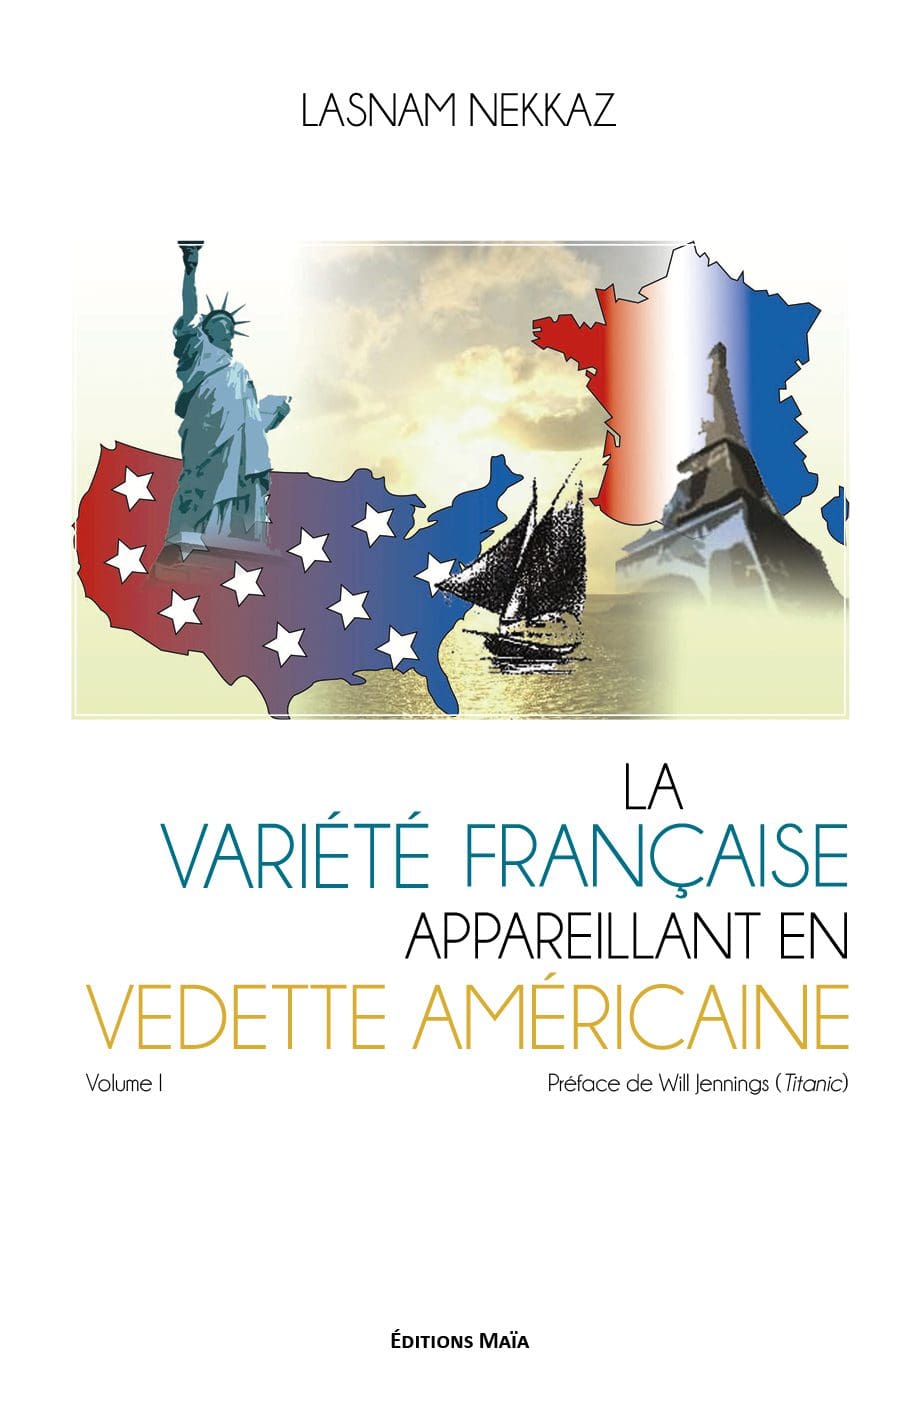 La variété française appareillant en vedette américaine – Simply Crowd